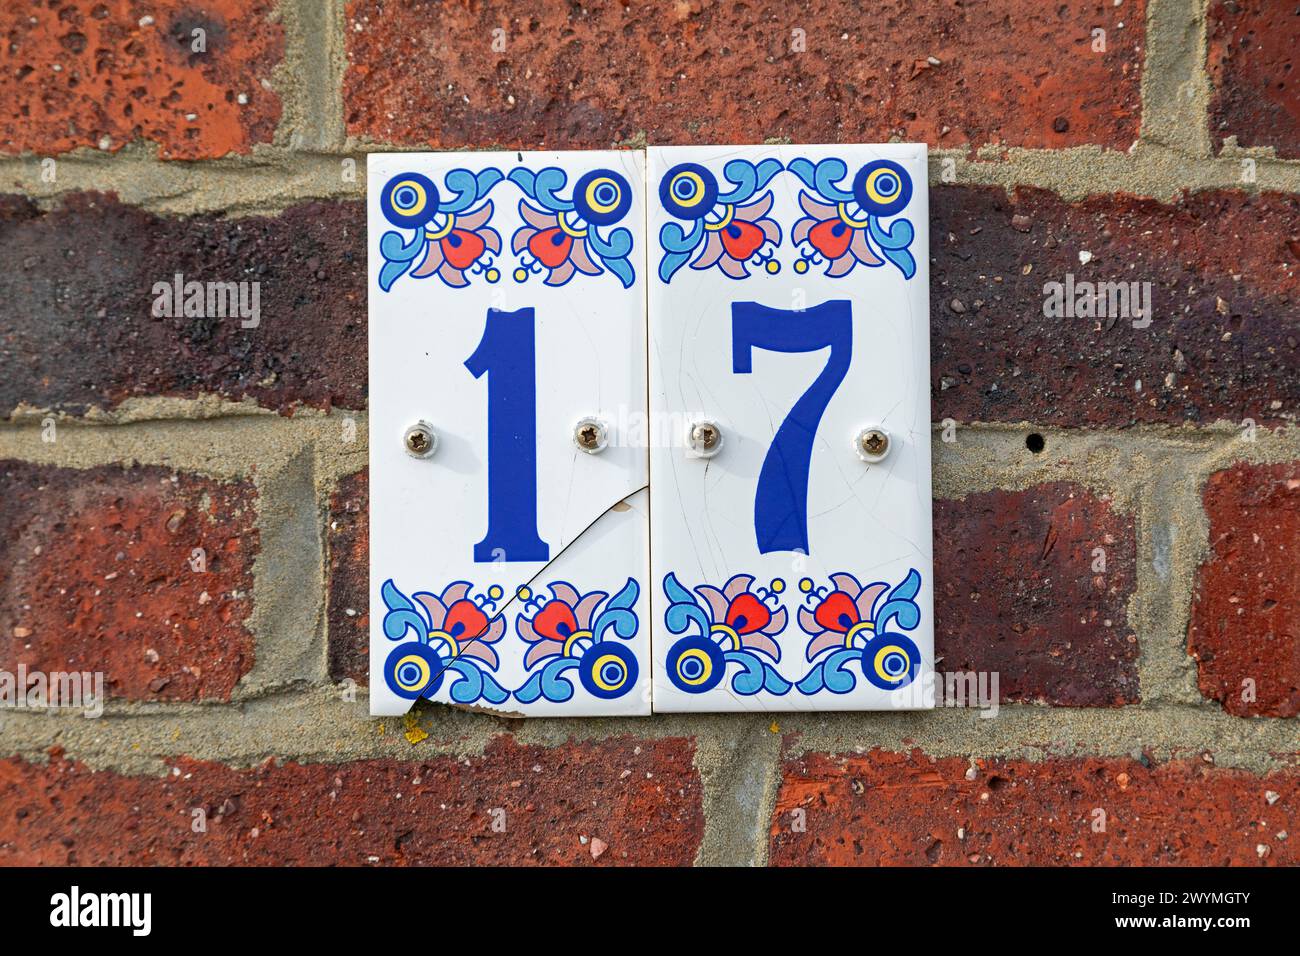 Tuiles, numéro de maison, rue le stade, Folkestone, Kent, Angleterre, Grande-Bretagne Banque D'Images